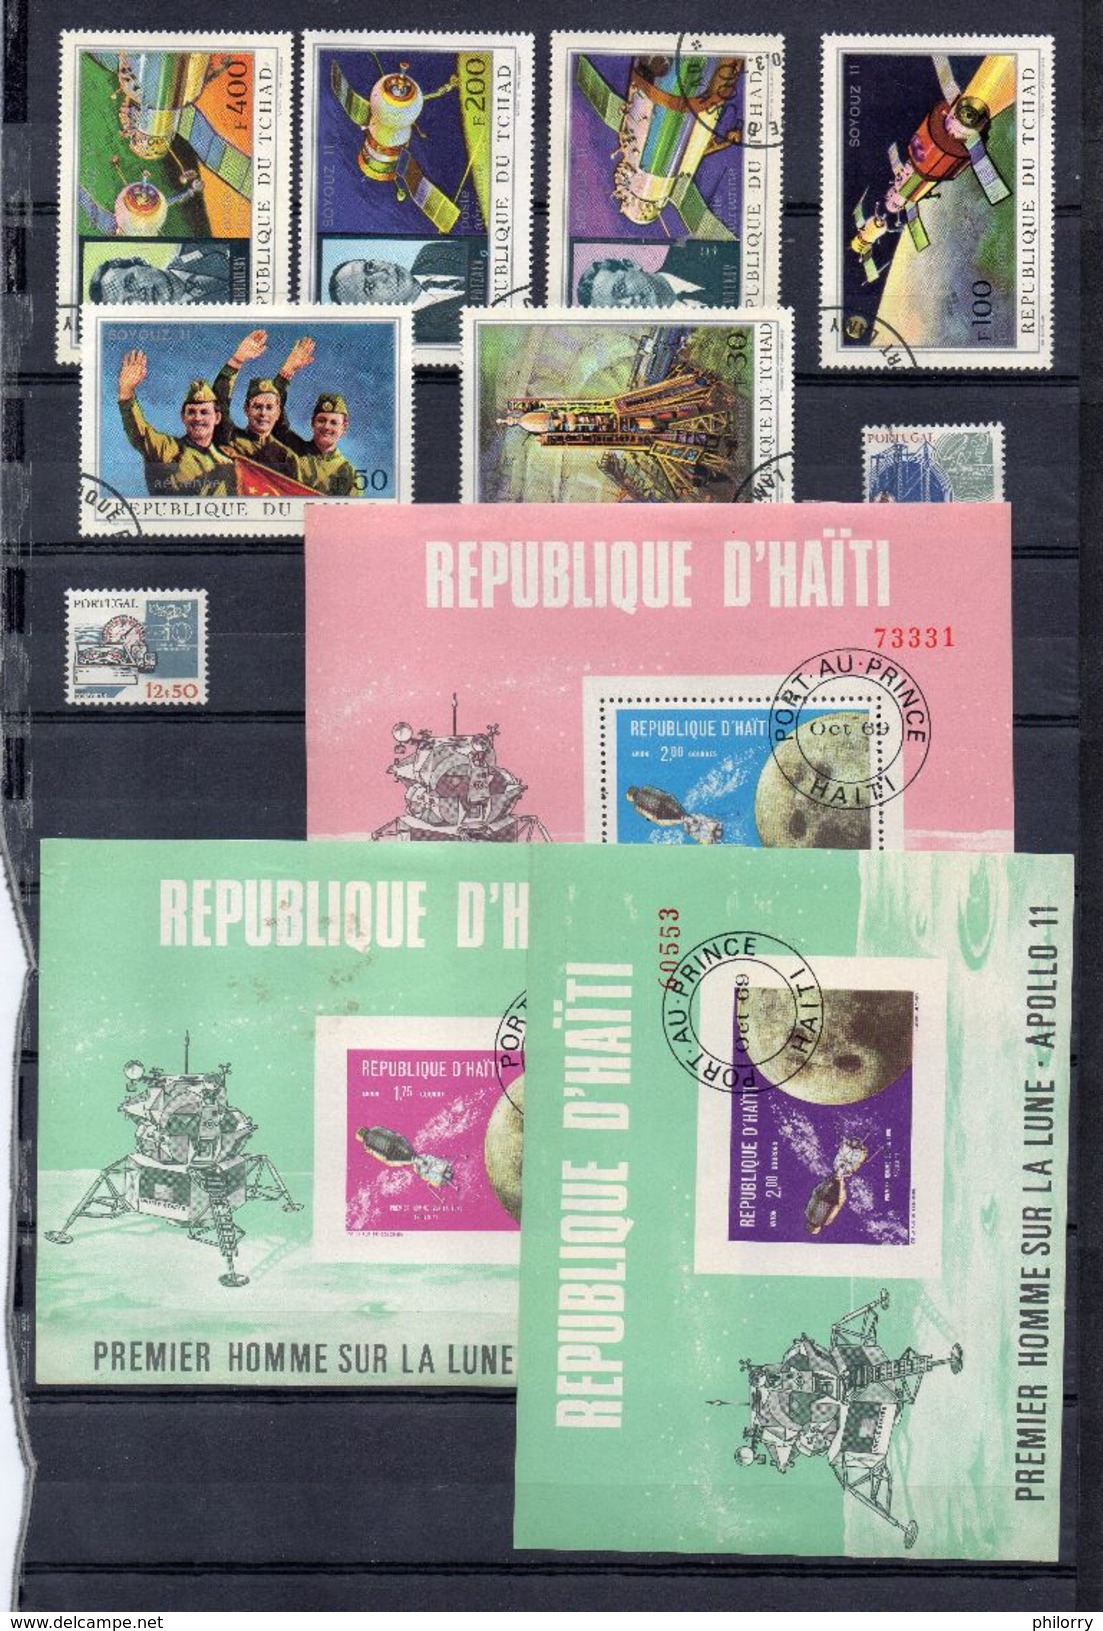 Collection Espace : 216 timbres et feuillets